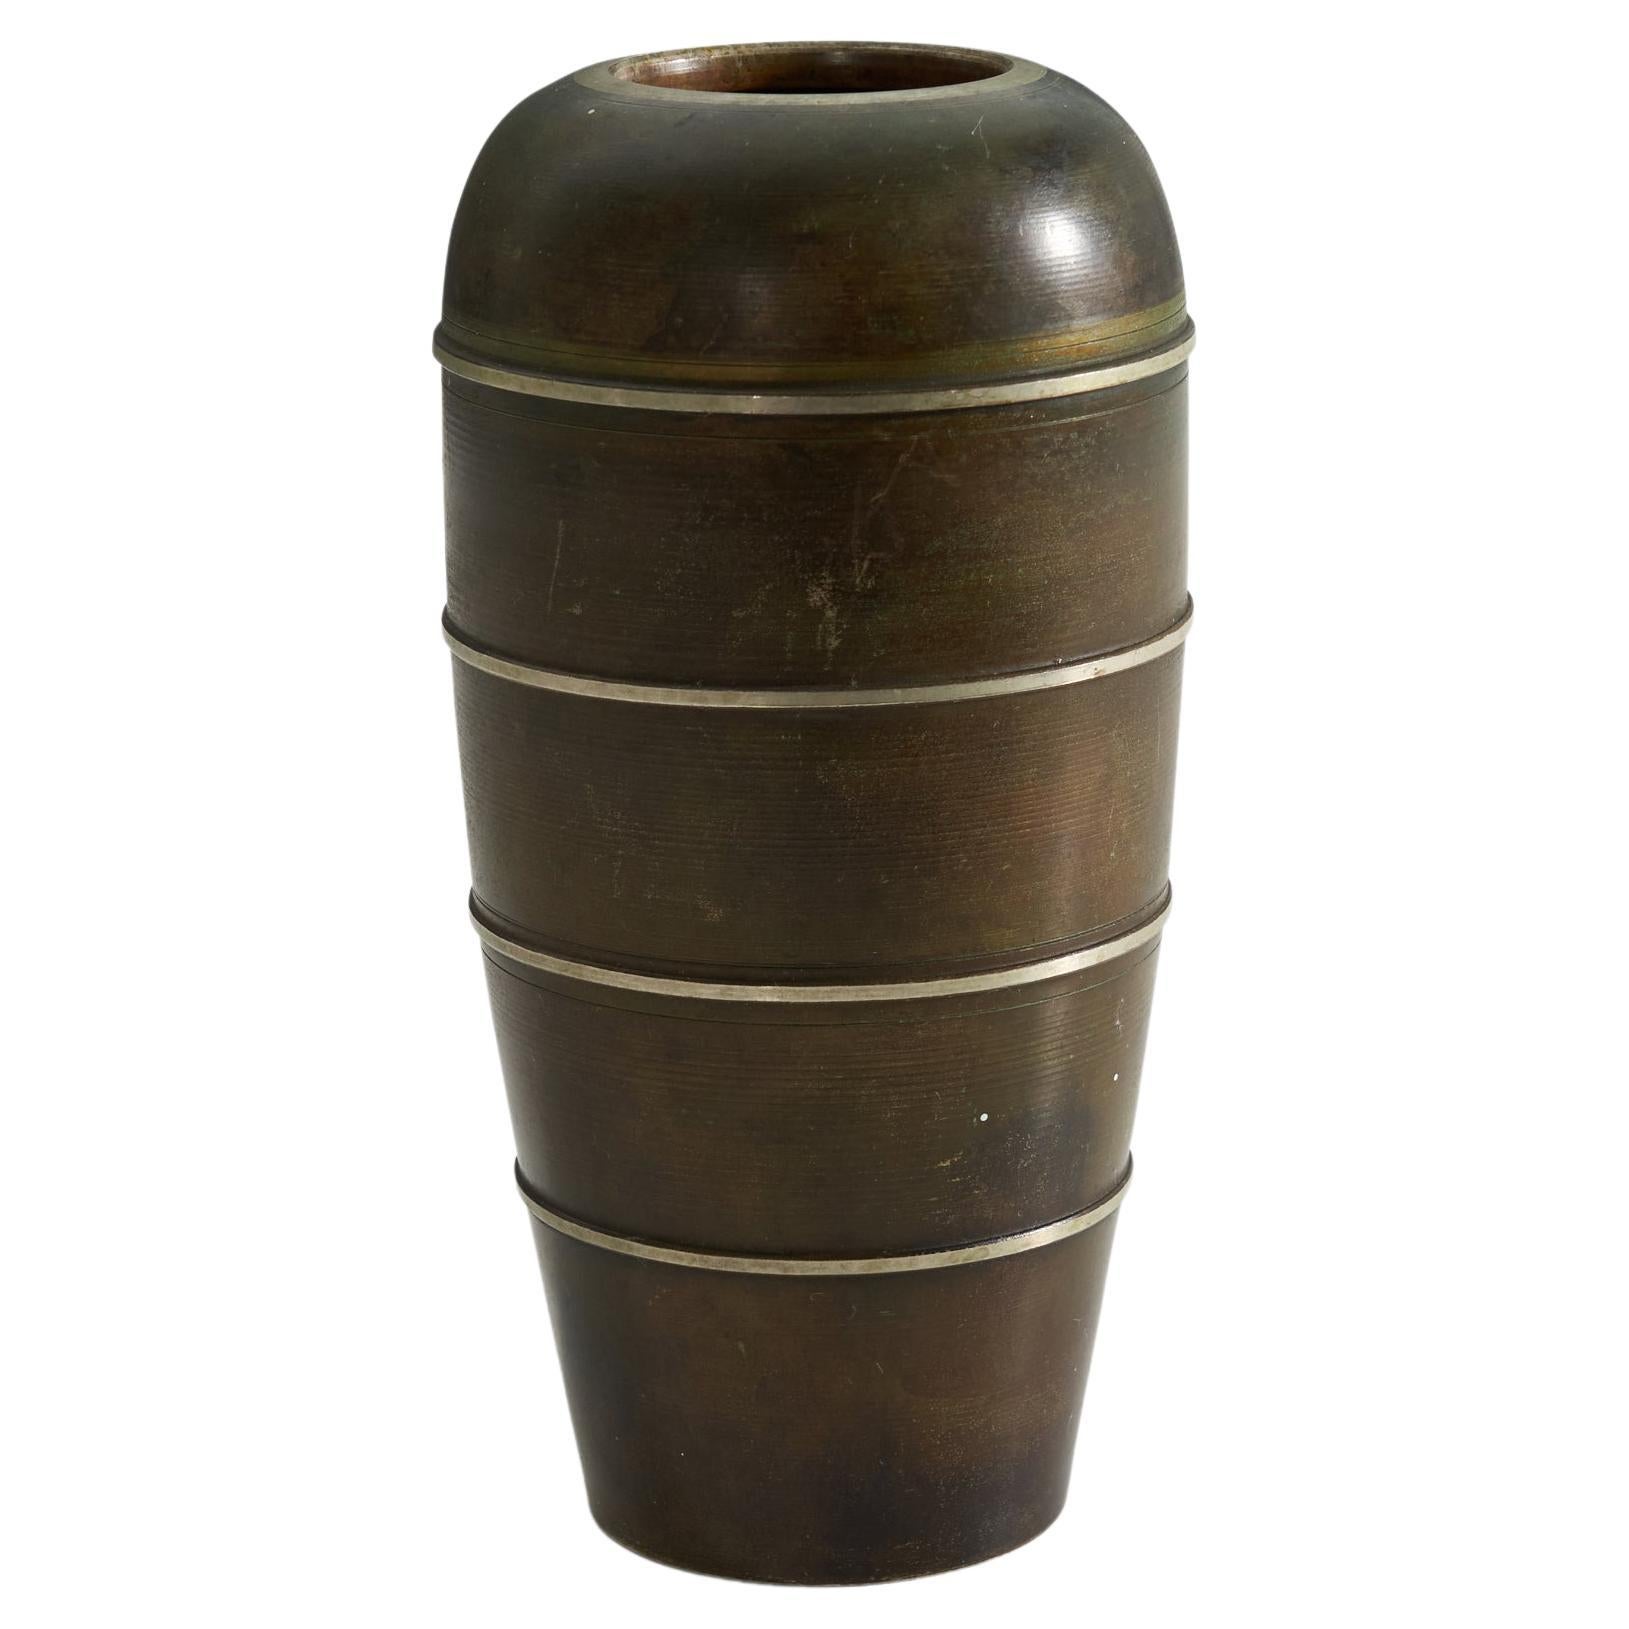 Birka Metall, Vase, Patinated Bronze, Sweden, 1930s